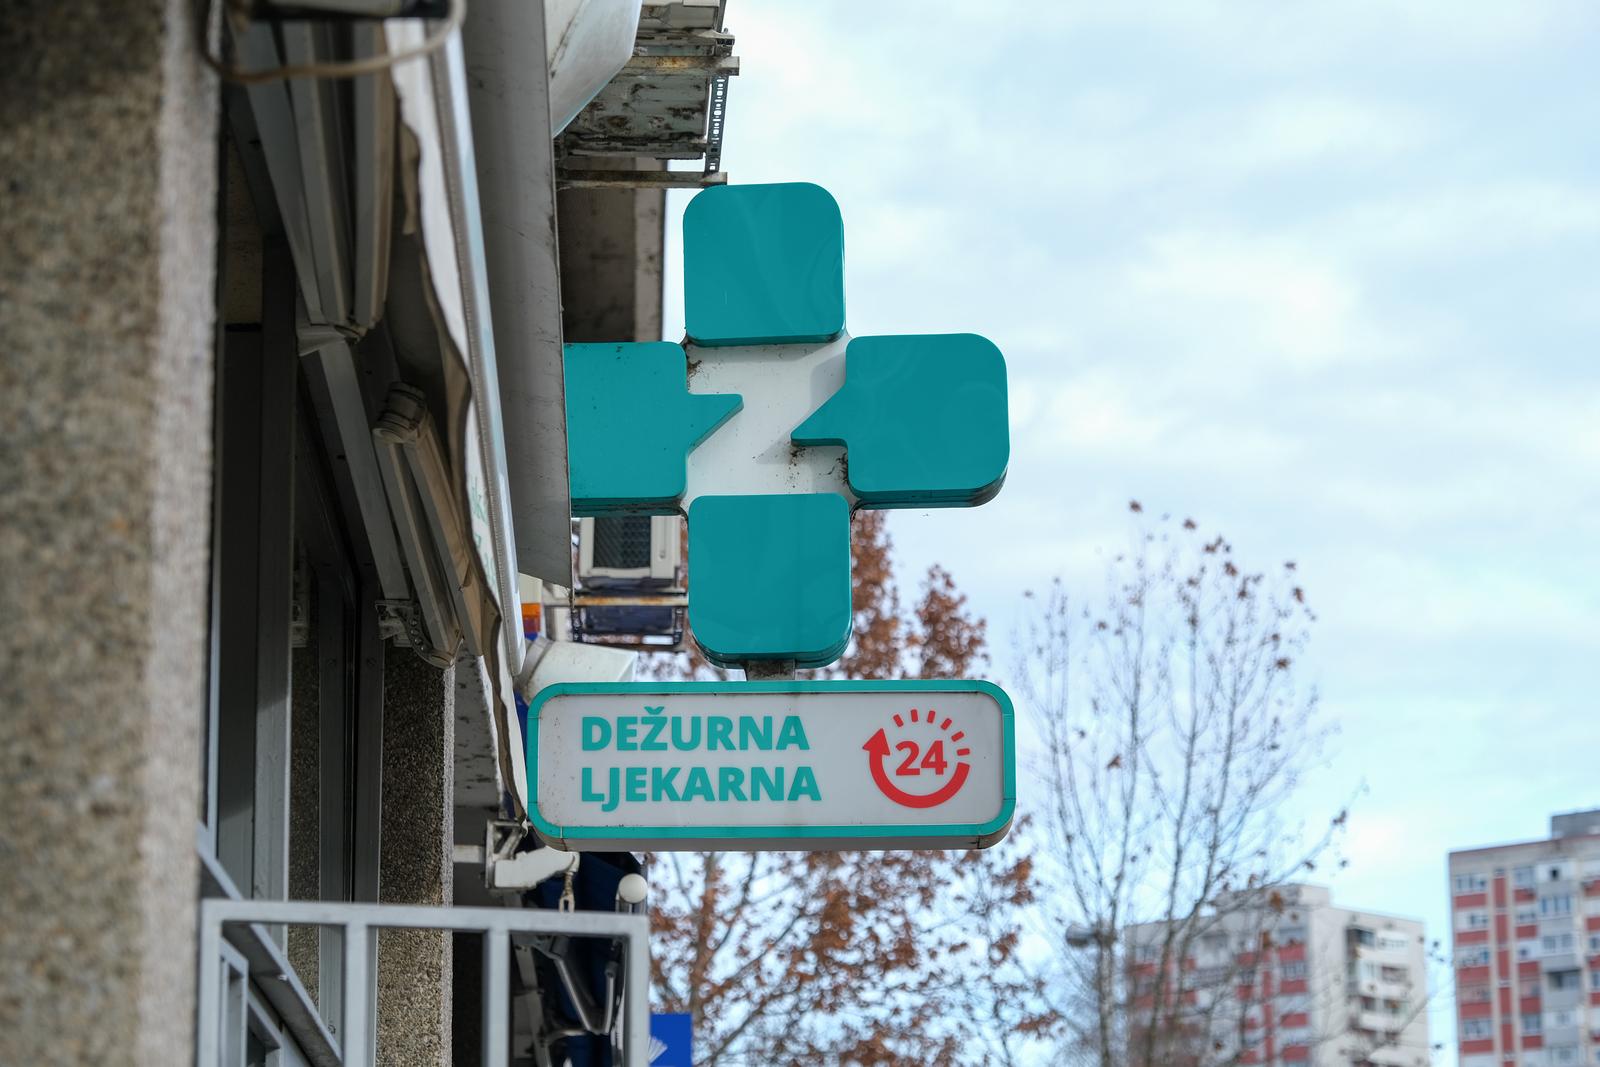 26.12.2022., Zagreb - Ispred dezurne ljekarne u Sigetu se stvorila guzva. Photo: Slaven Branislav Babic/PIXSELL